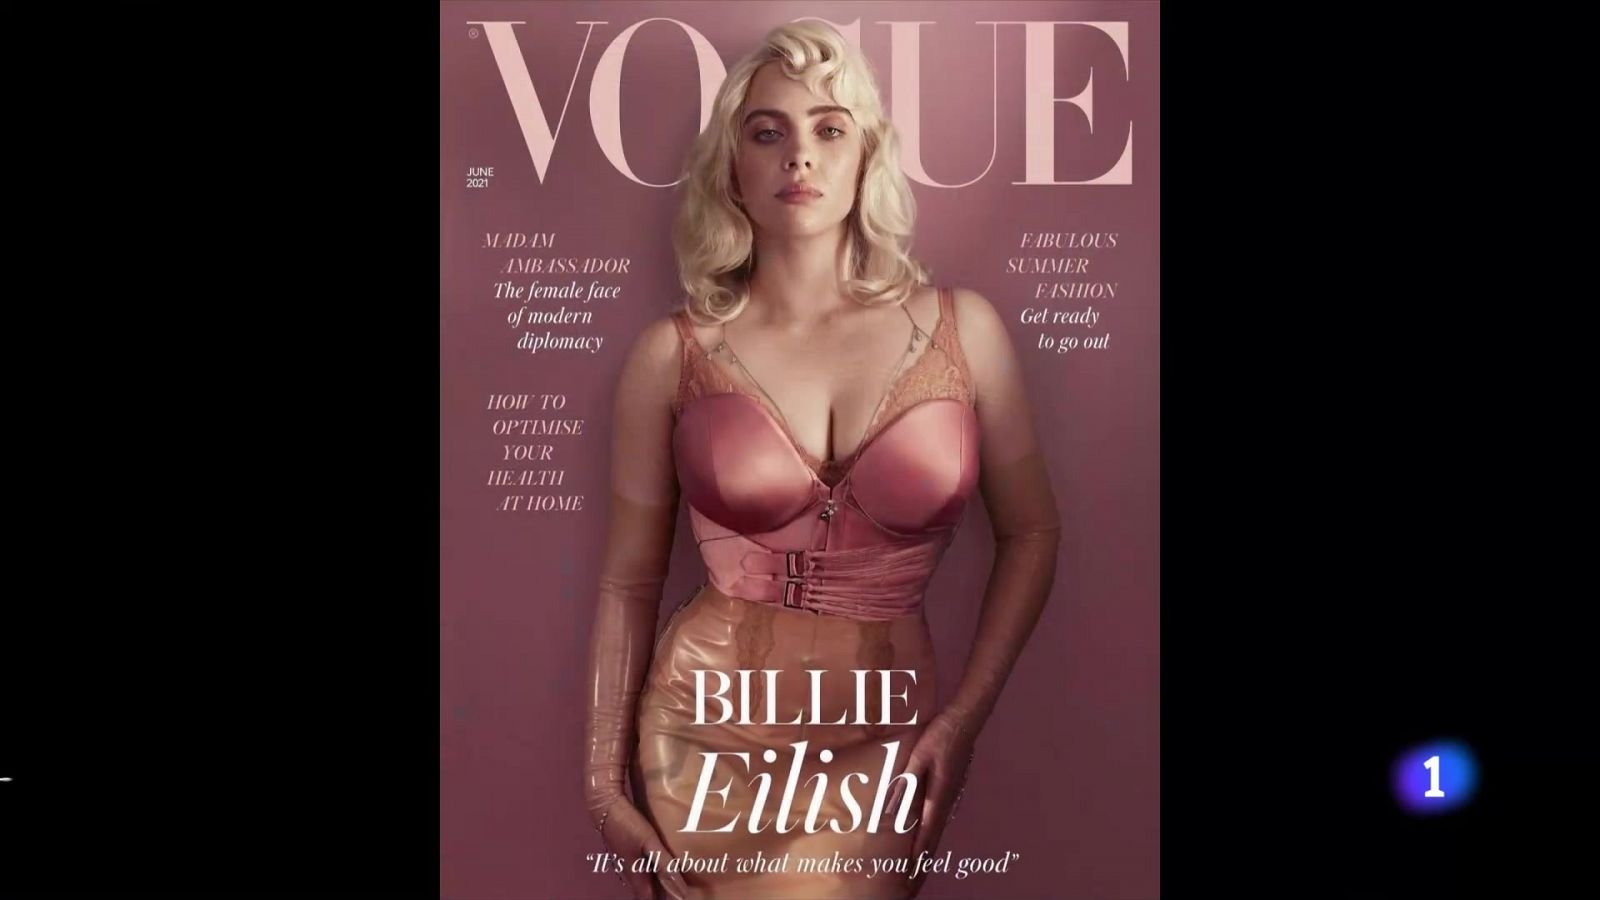 El nuevo look de la cantante Billie Eilish sorprende a sus fans y bate un récord en Instagram- RTVE.es